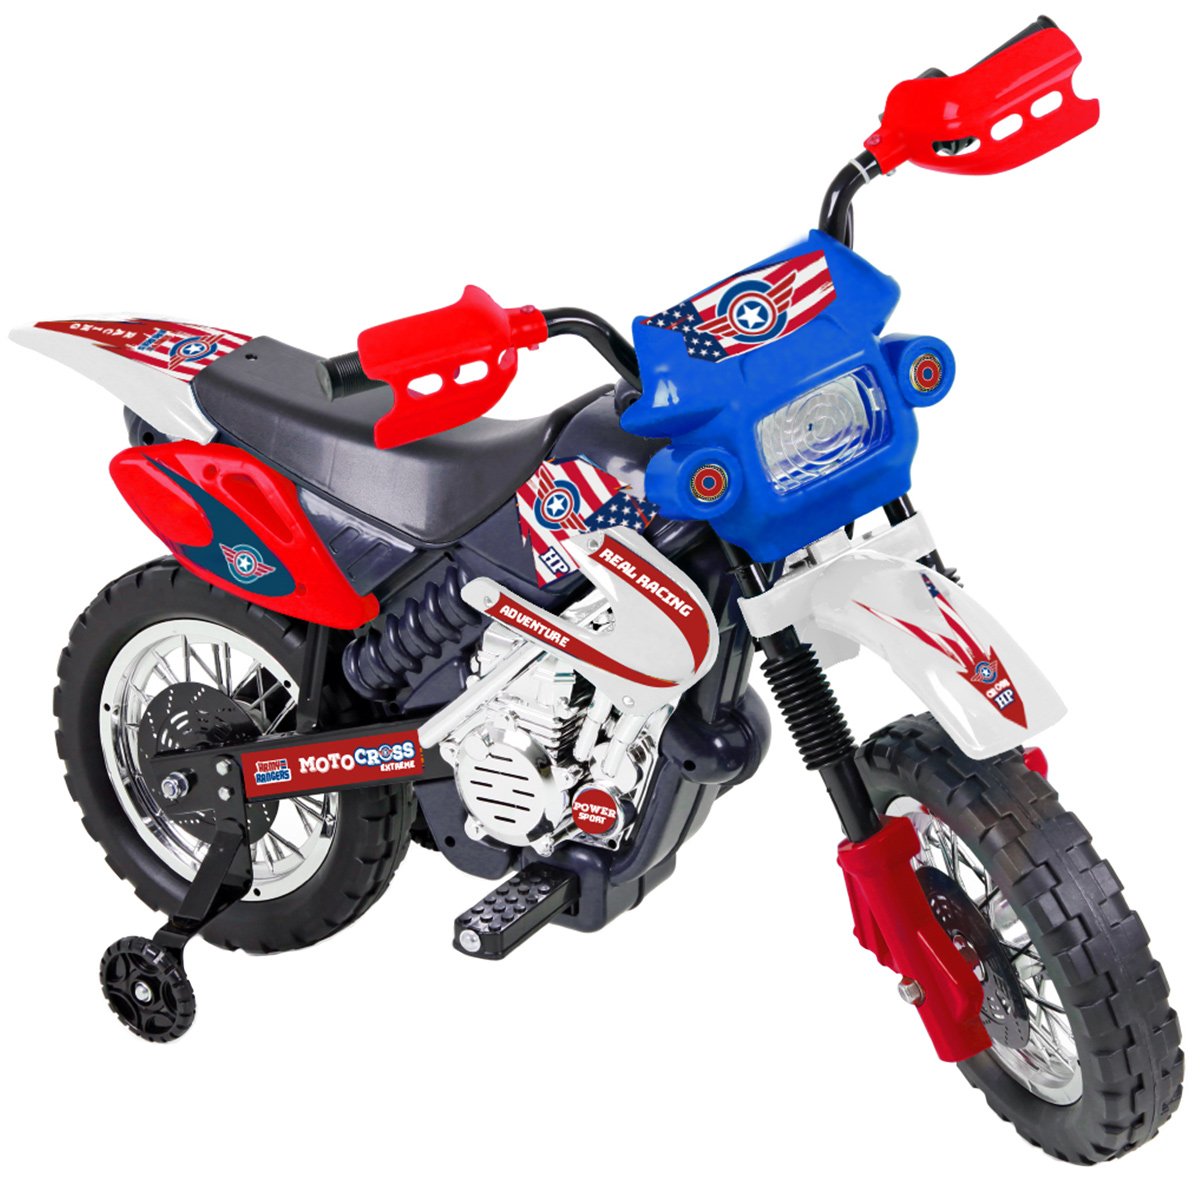 Moto Elétrica Infantil Motocross Para Criança +3 anos até 20kg